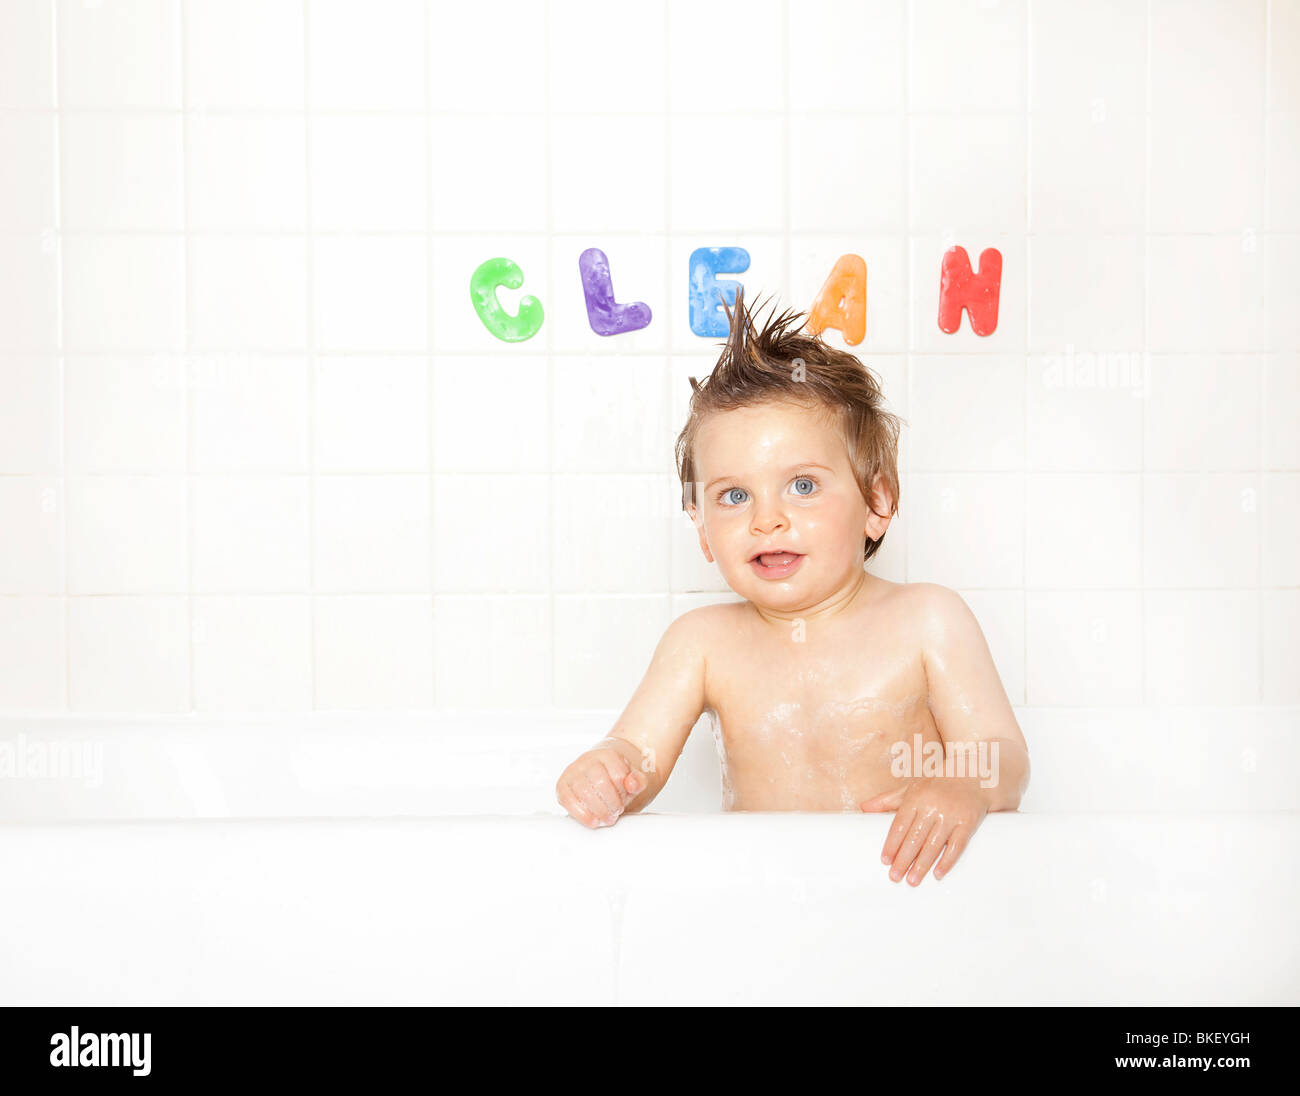 Baby boy in vasca da bagno Foto Stock